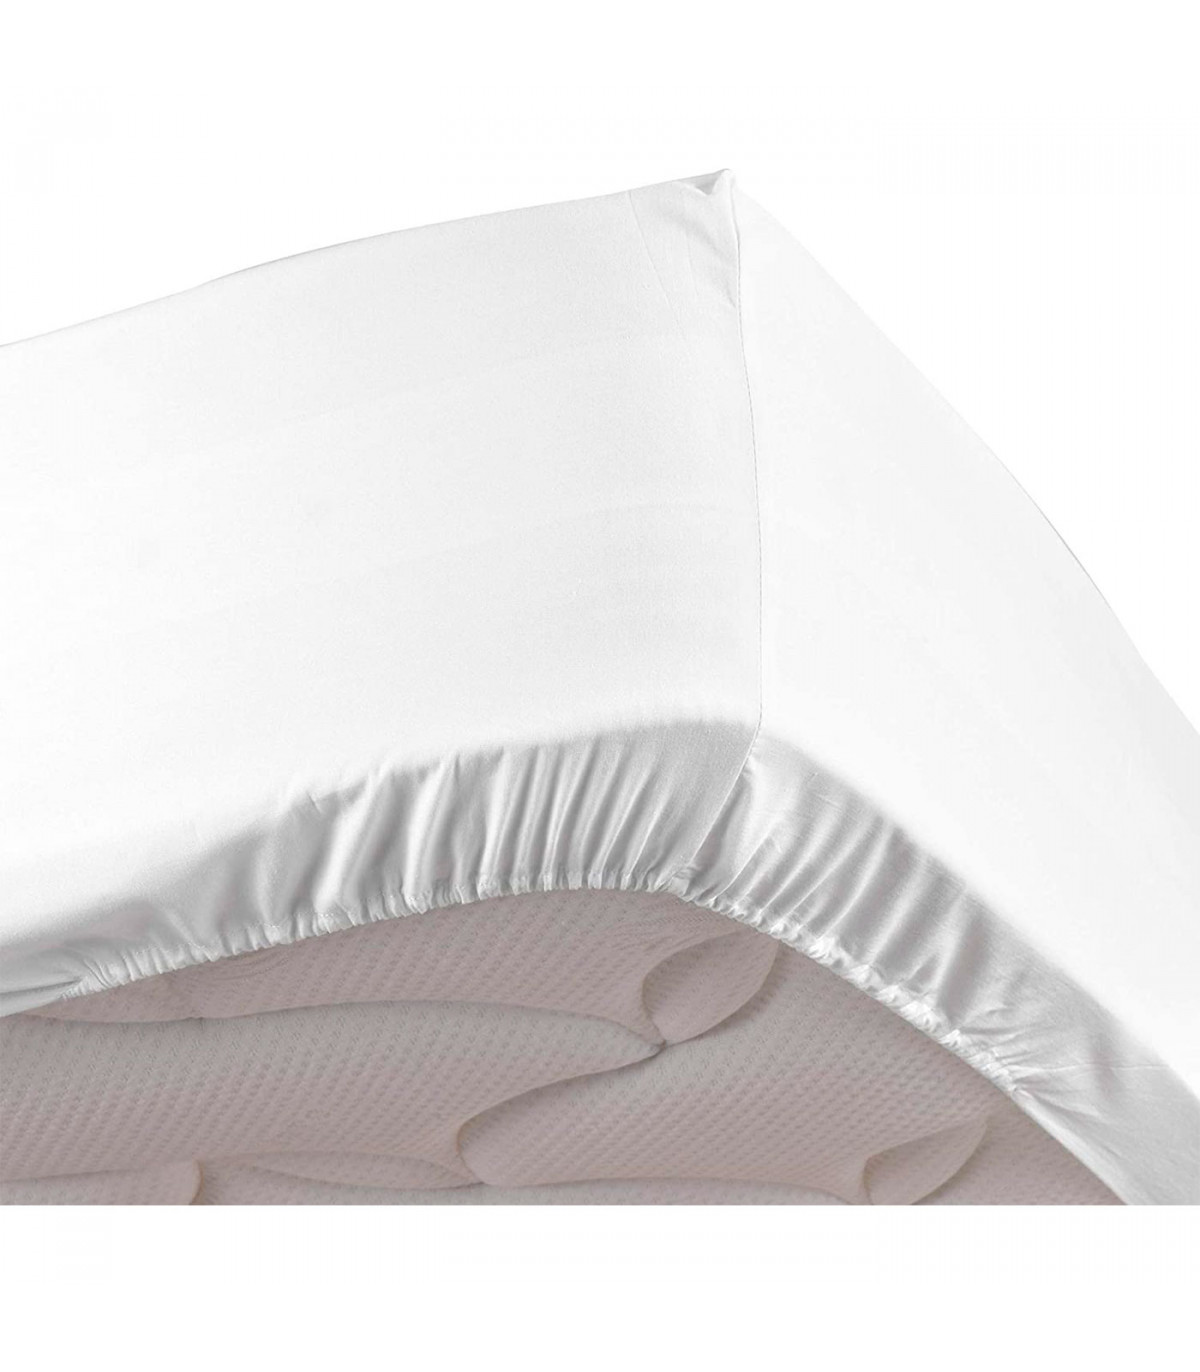 Tradineur - Sábana bajera algodón para cama de 135, especial pieles sensibles, suave transpirable (Blanco, 135 x